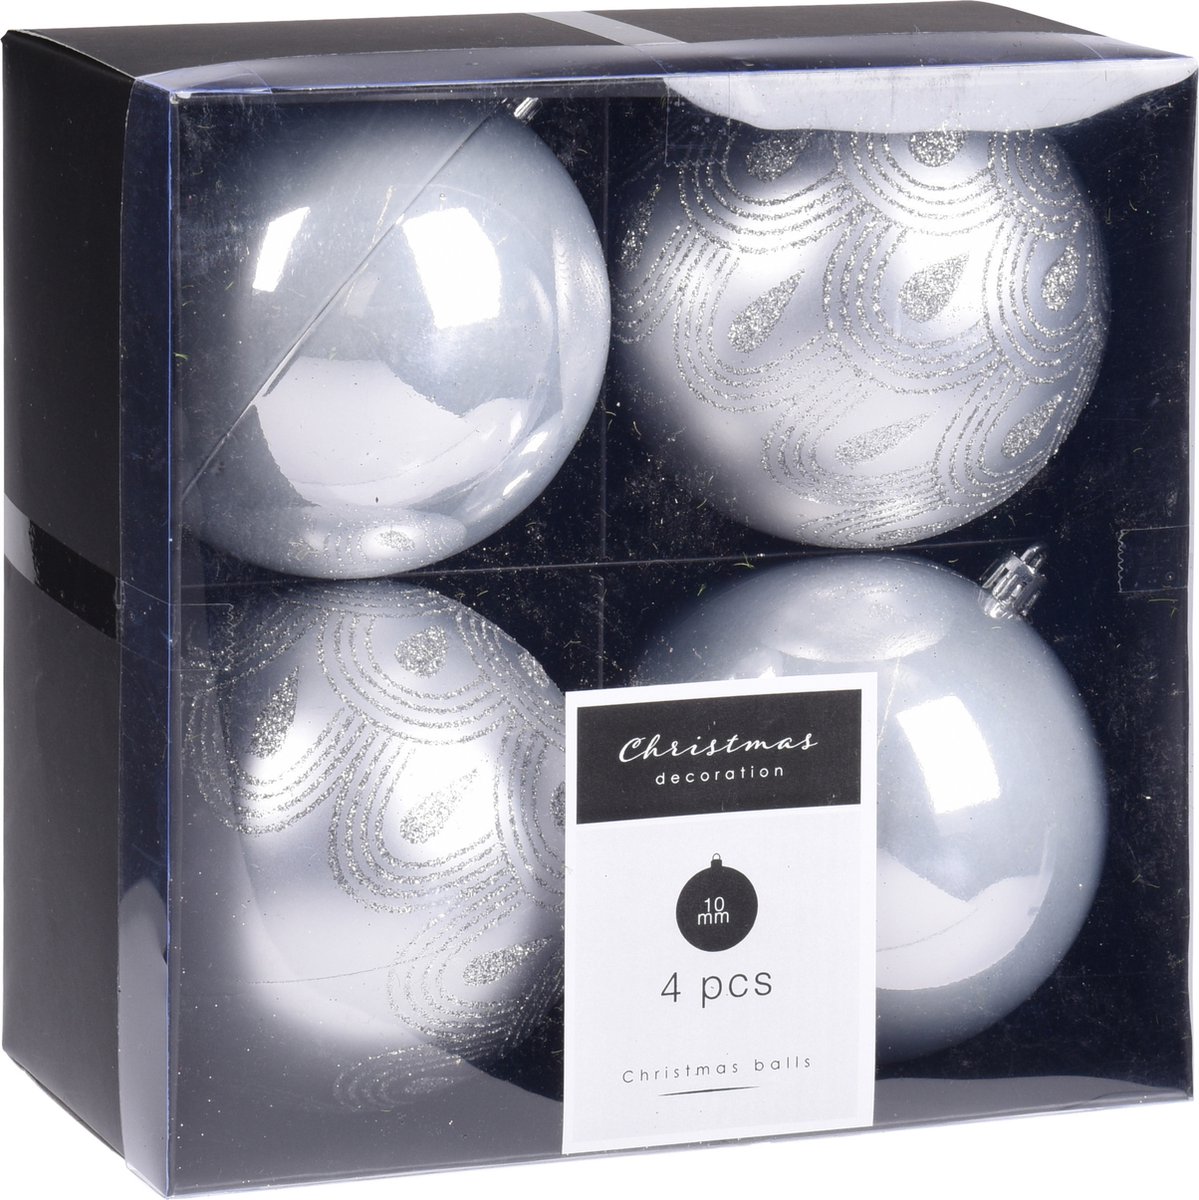 8x Kerstboomversiering luxe kunststof kerstballen zilver 10 cm - Kerstversiering/kerstdecoratie zilver